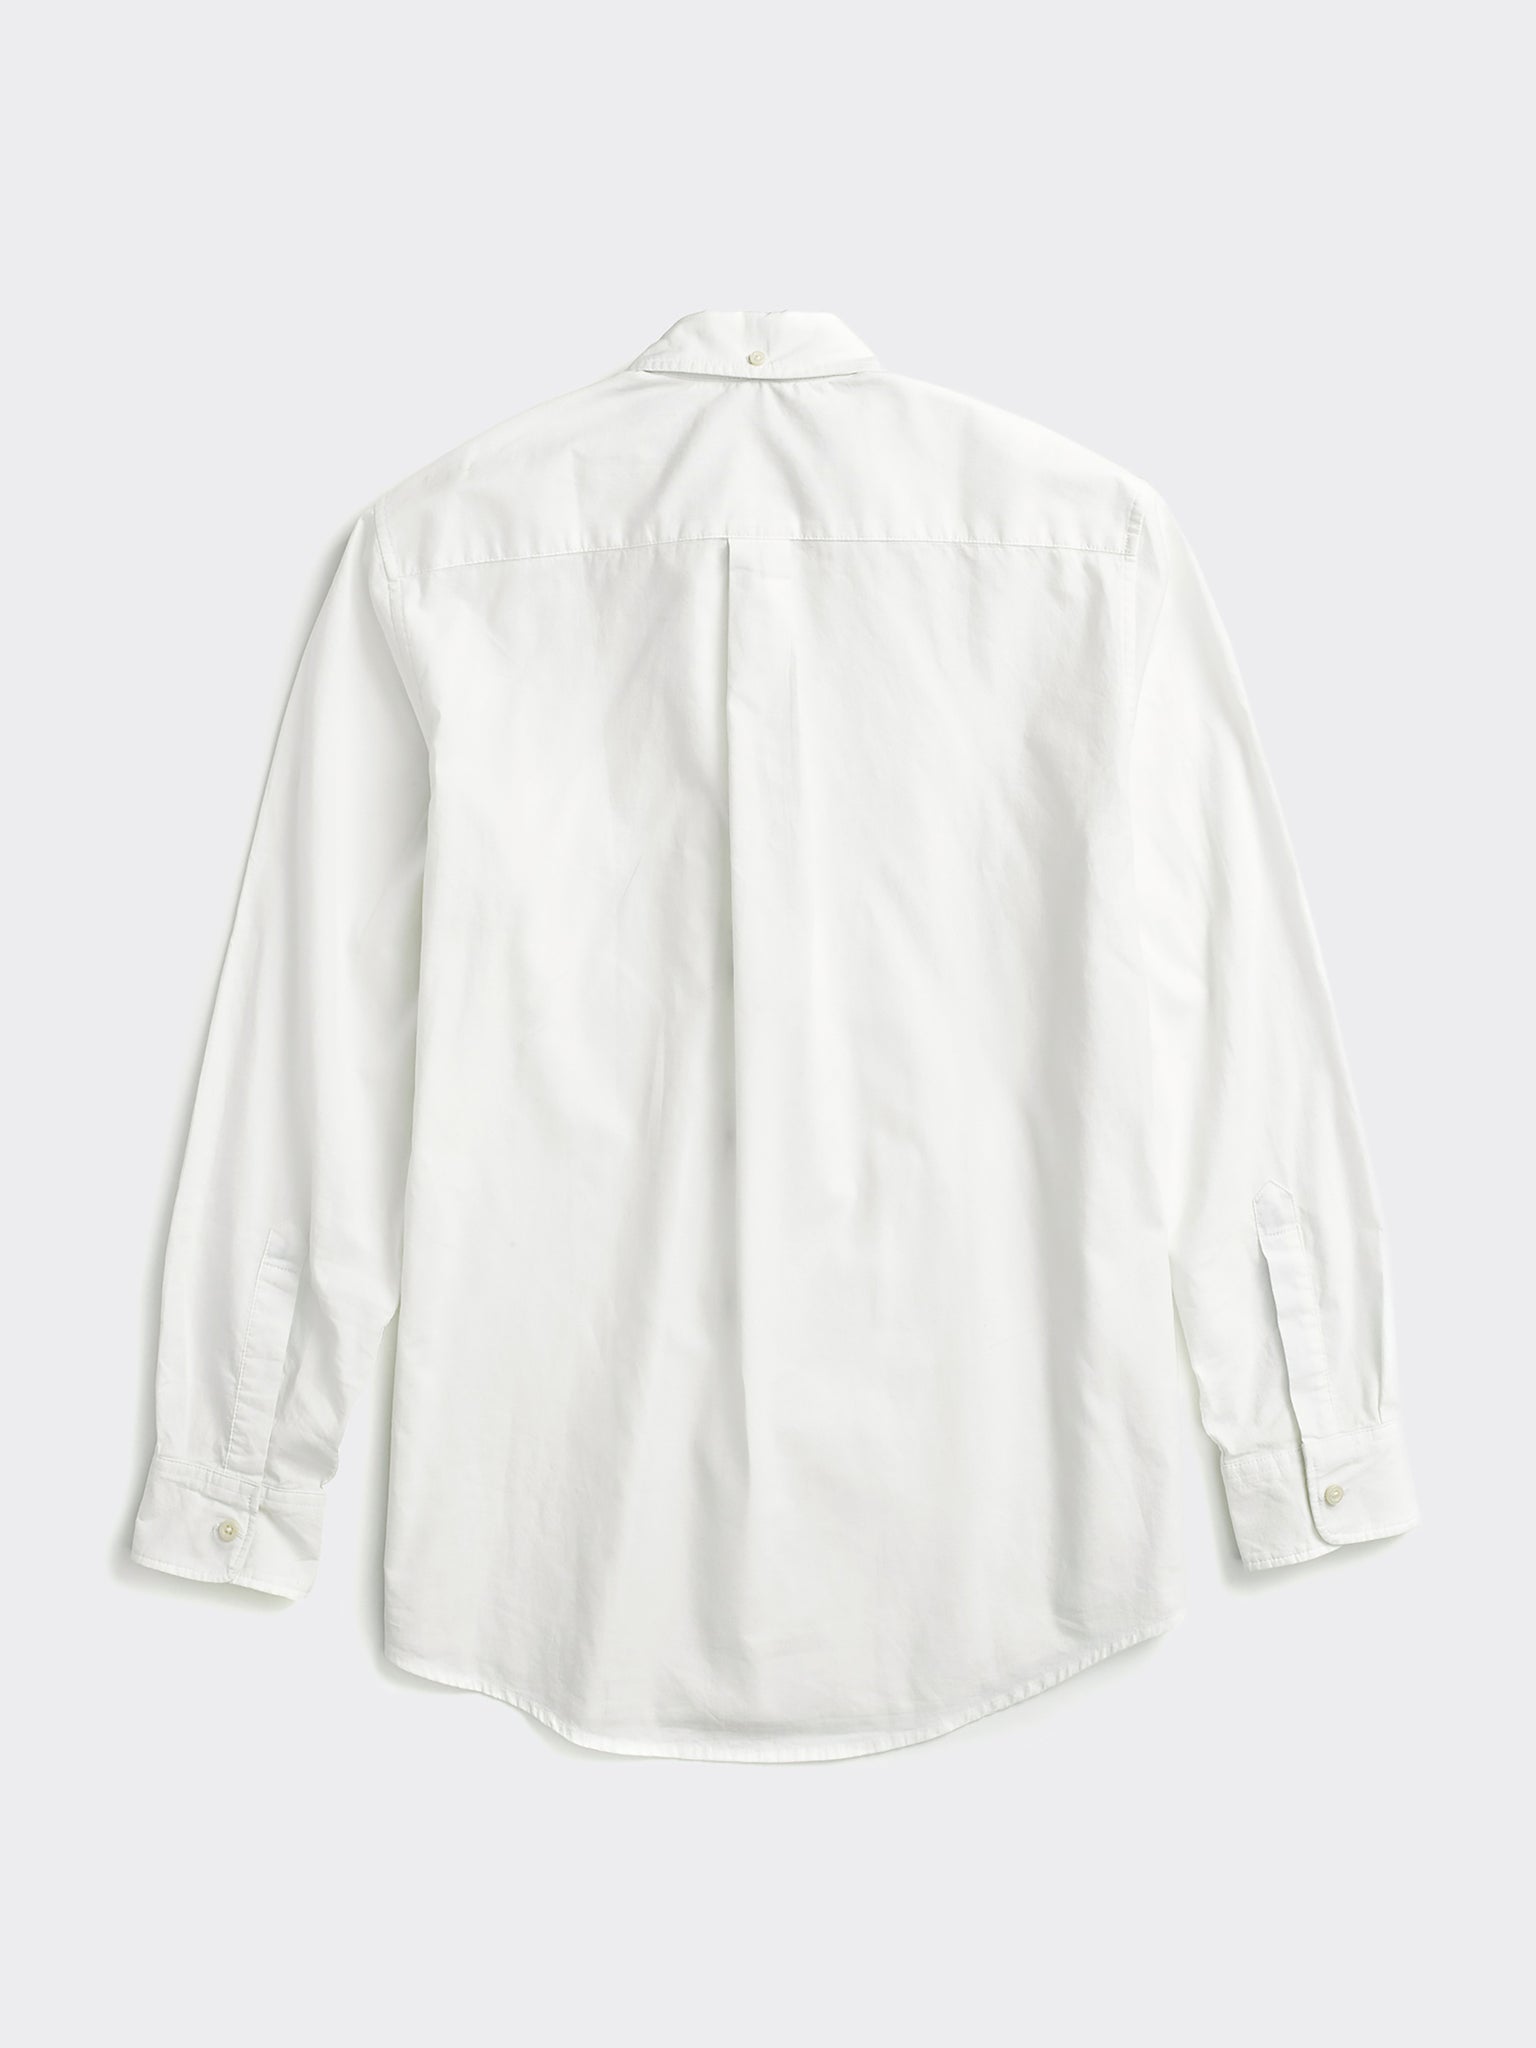 Capote Shirt - White